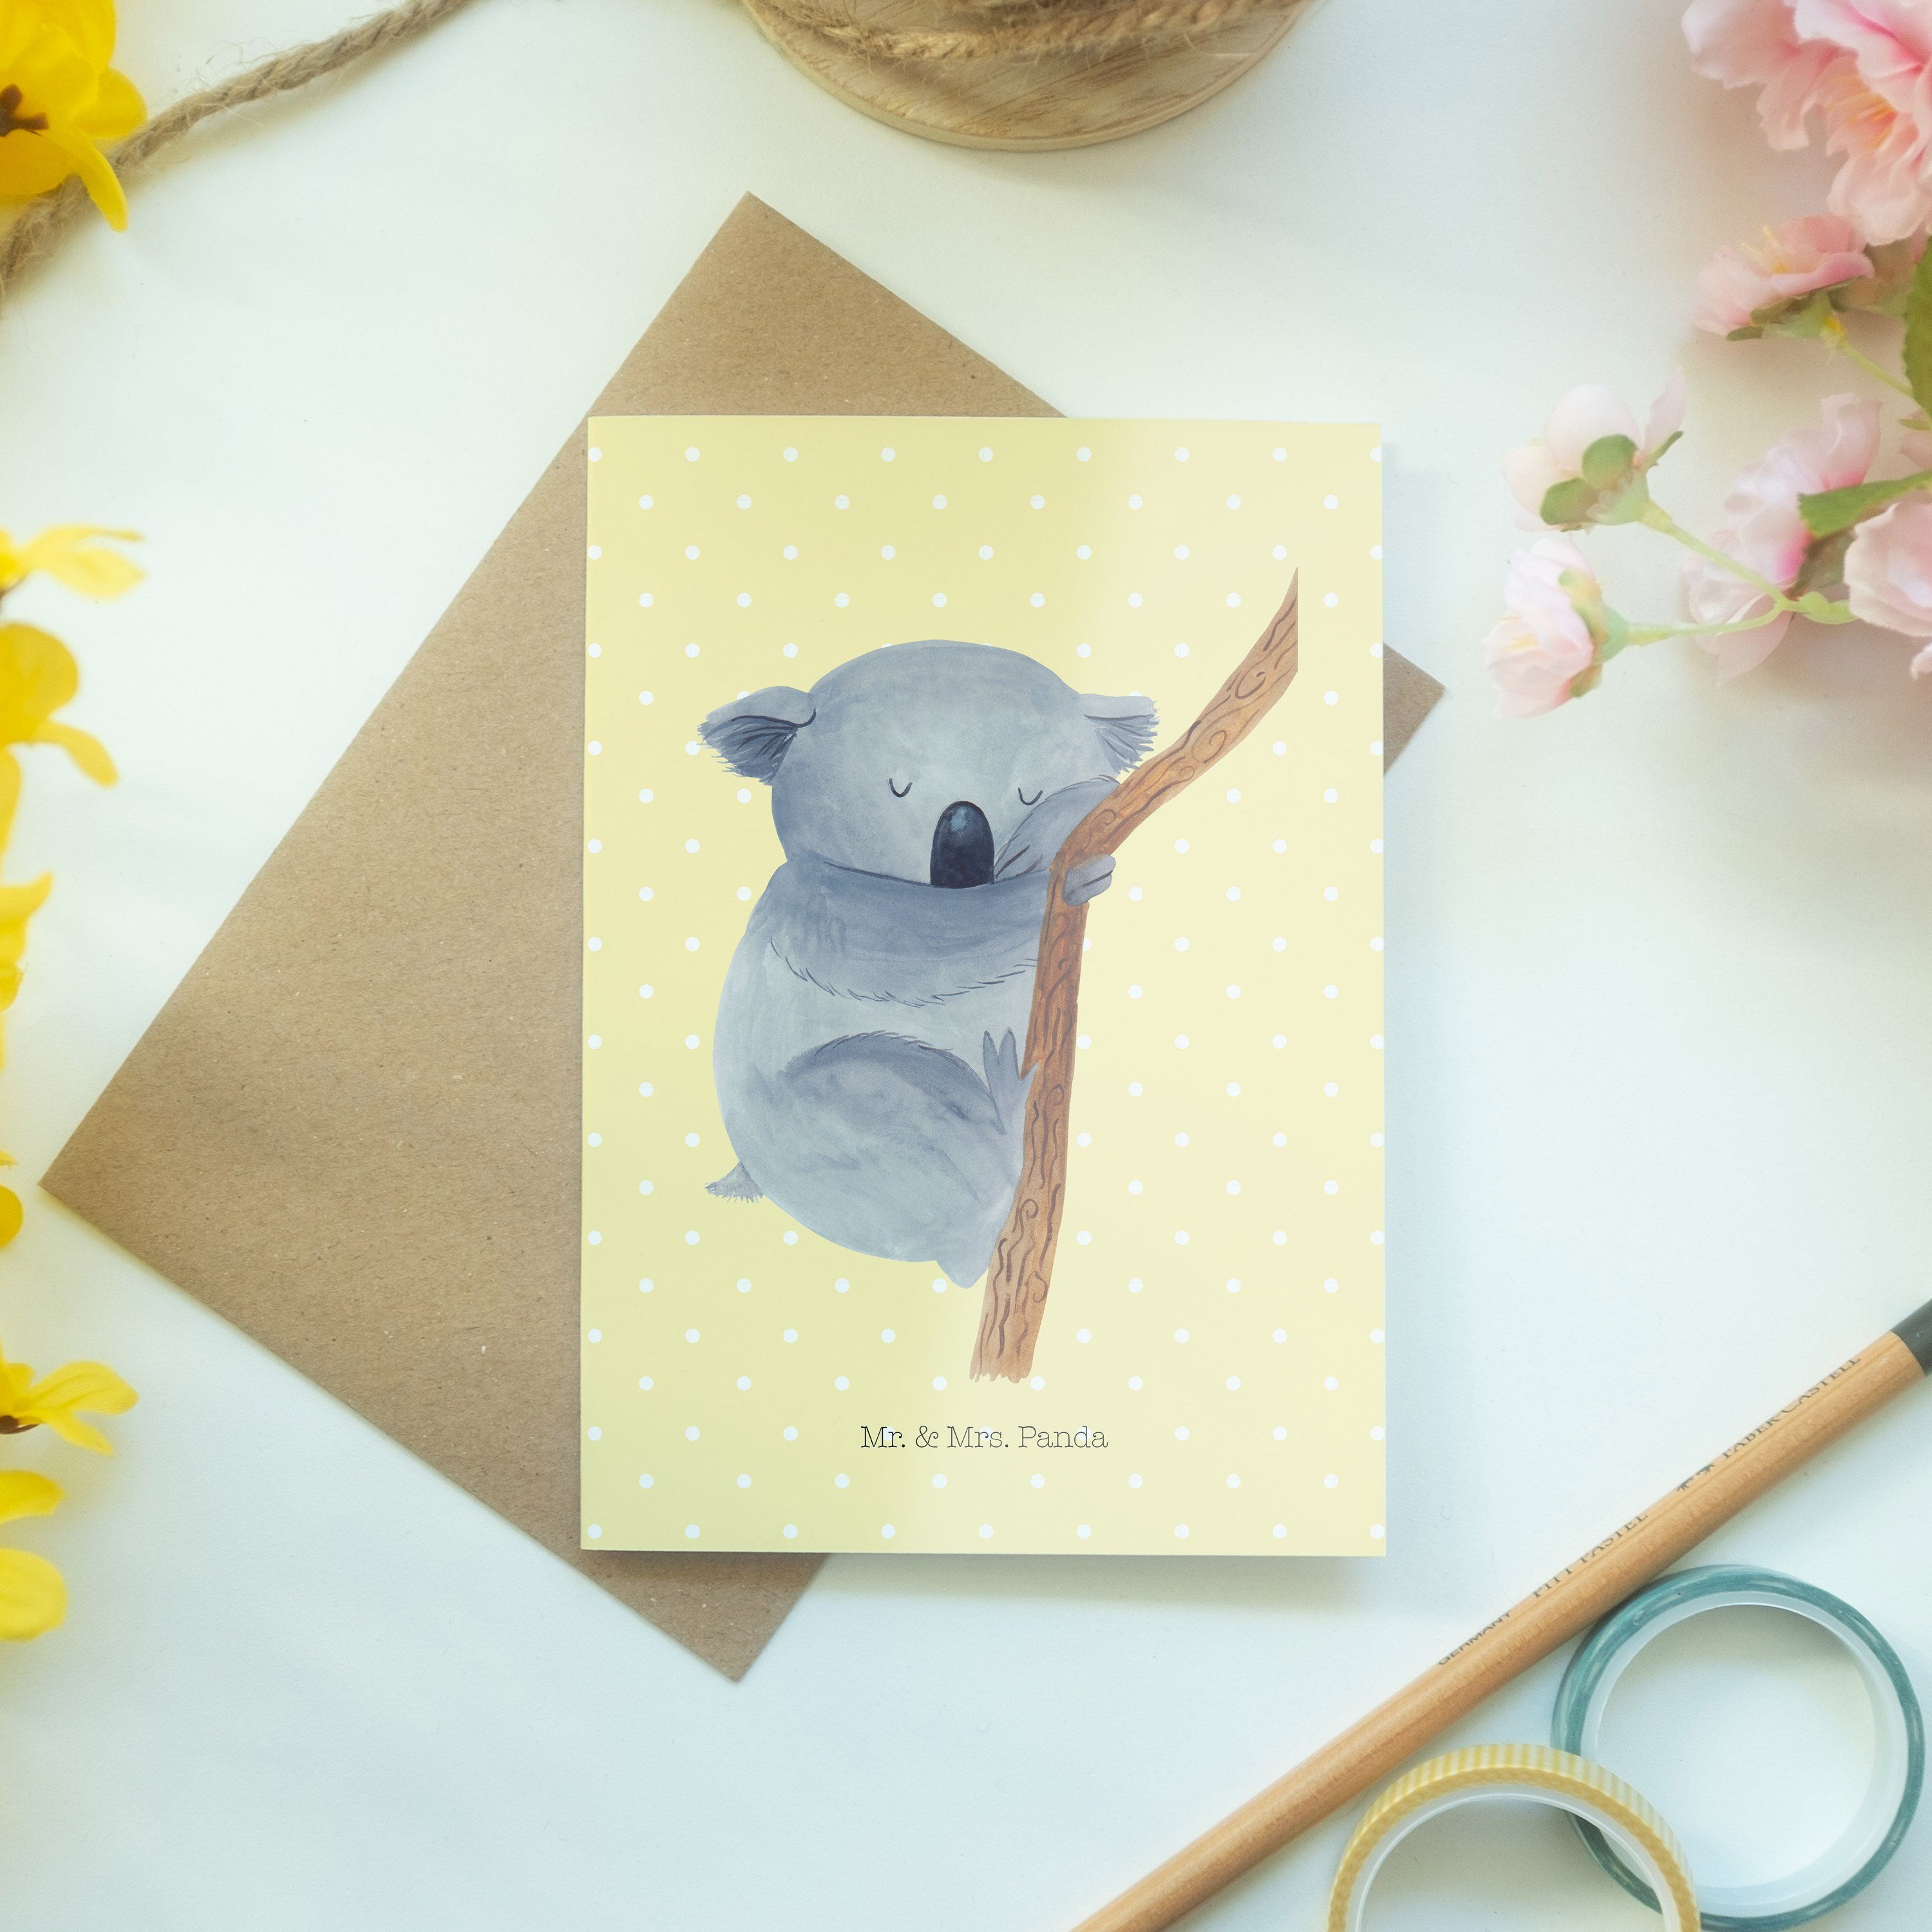 Pastell Geschenk, Mr. Geburtstagskarte Grußkarte & Mrs. Tiere, Gelb Panda - Koalabär schlafen, -